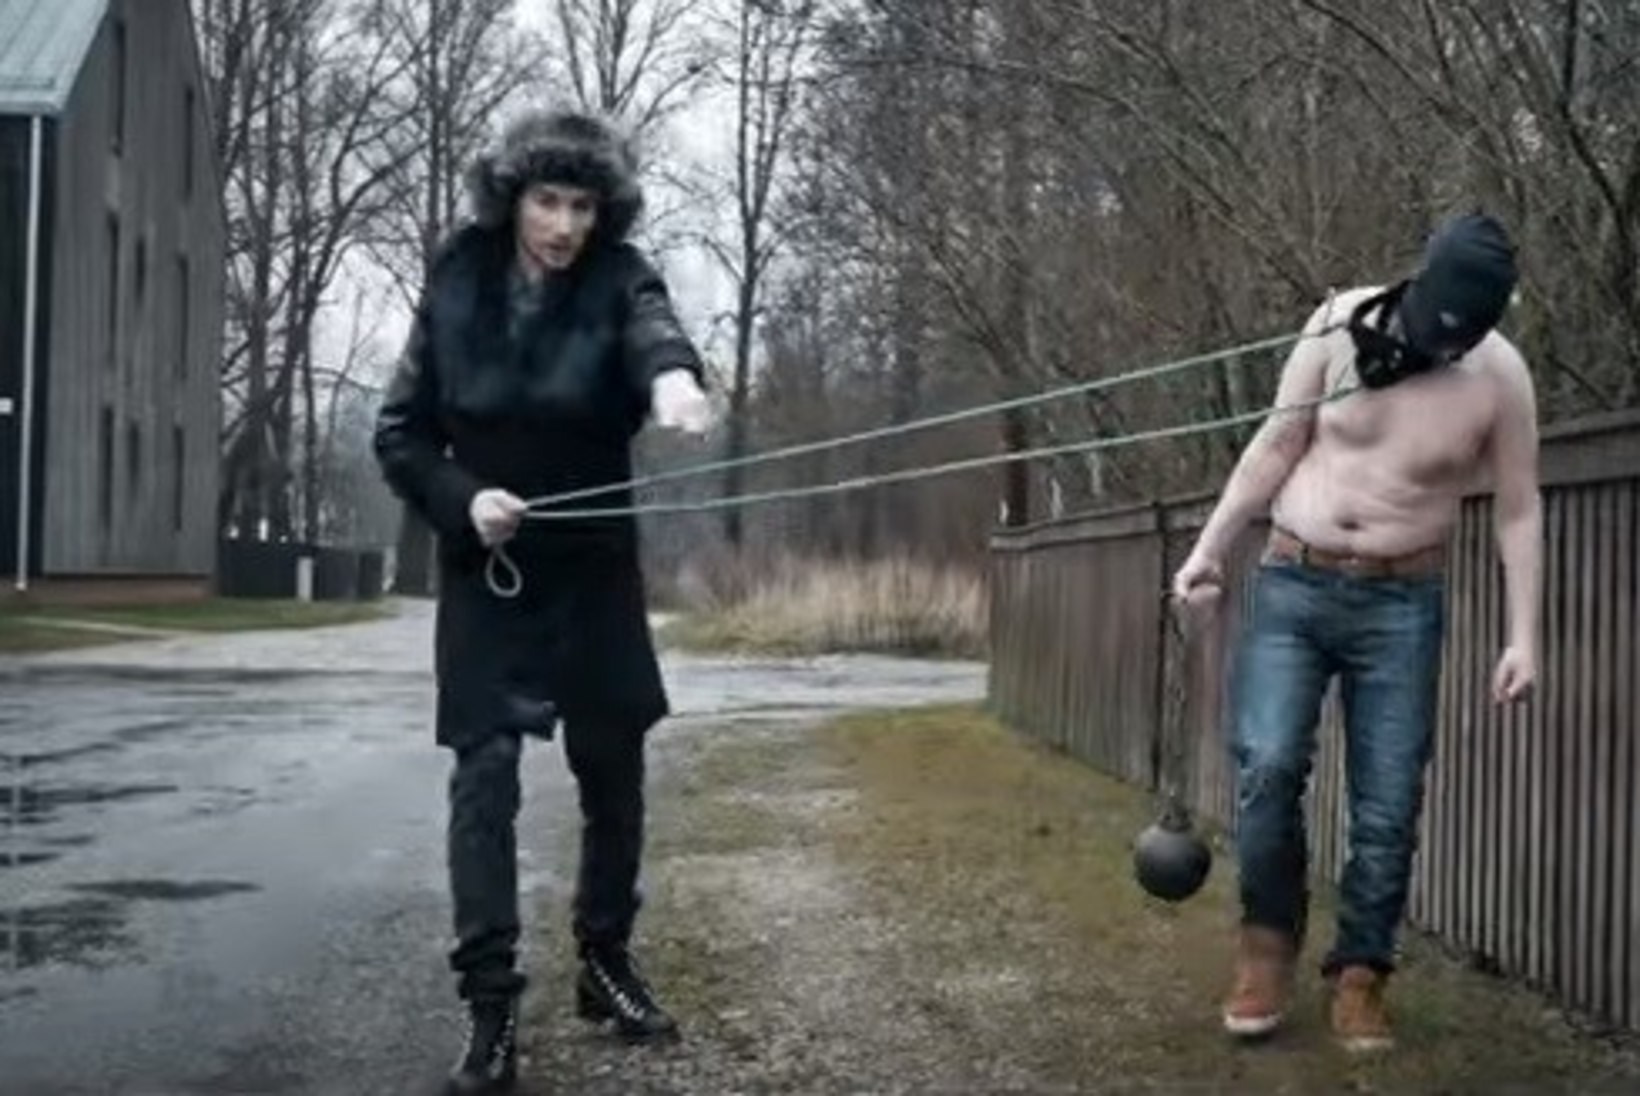 UUEL AASTAL UUE HOOGA: Strippar Marco lajatas pöörase muusikavideoga – "Rita Rita vana lita"!